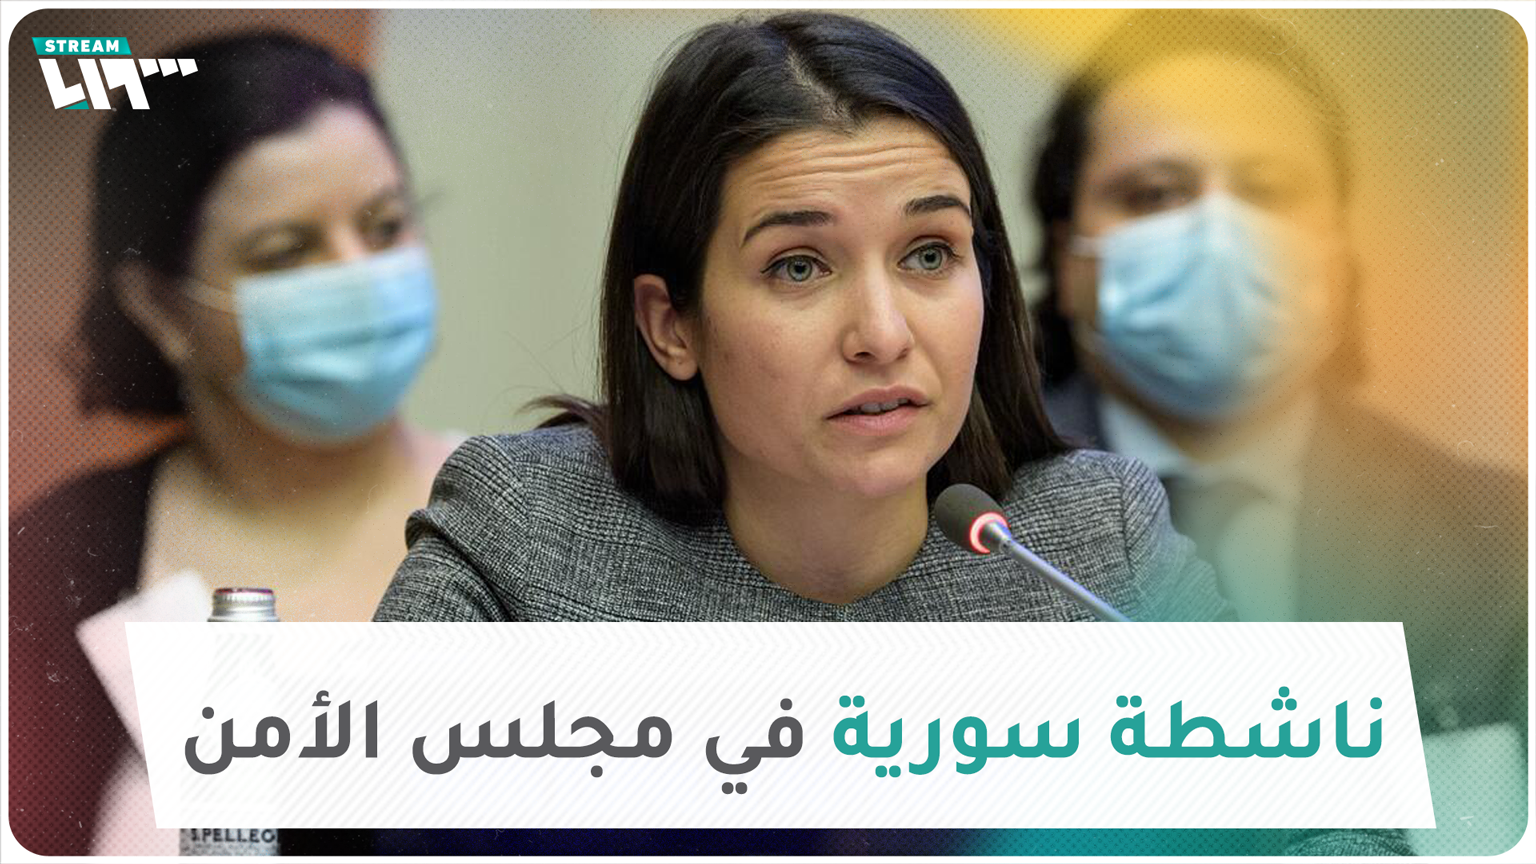 وعد الخطيب مخرجة وناشطة تتحدث عن سوريا في مجلس الأمن